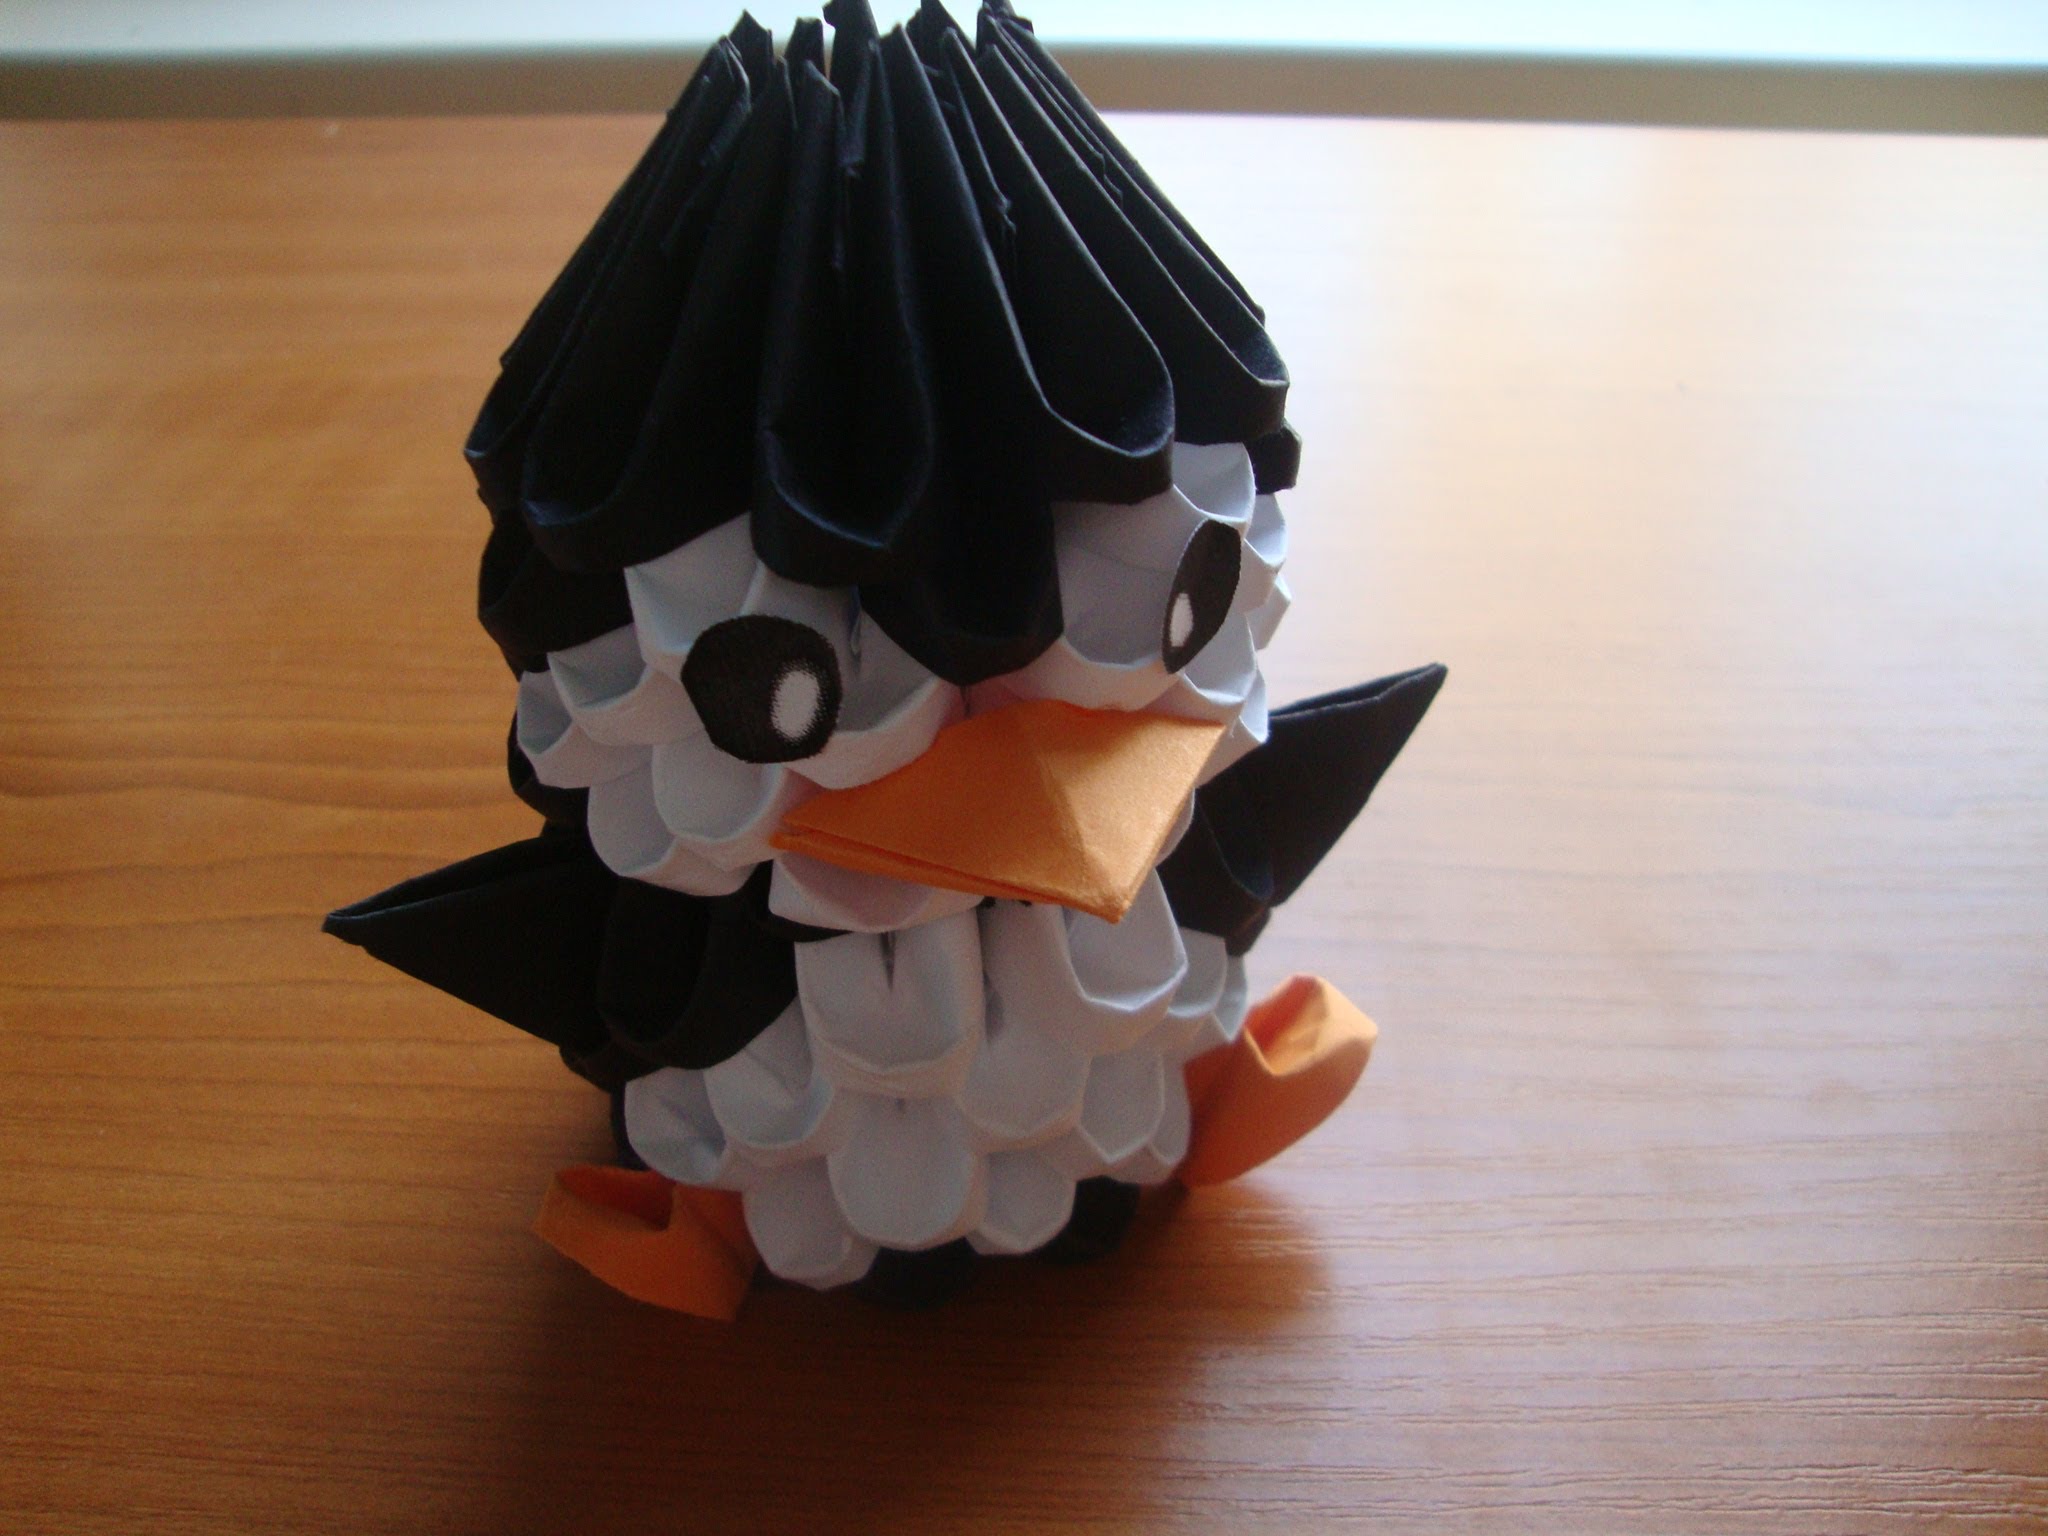 penguin 3d origami